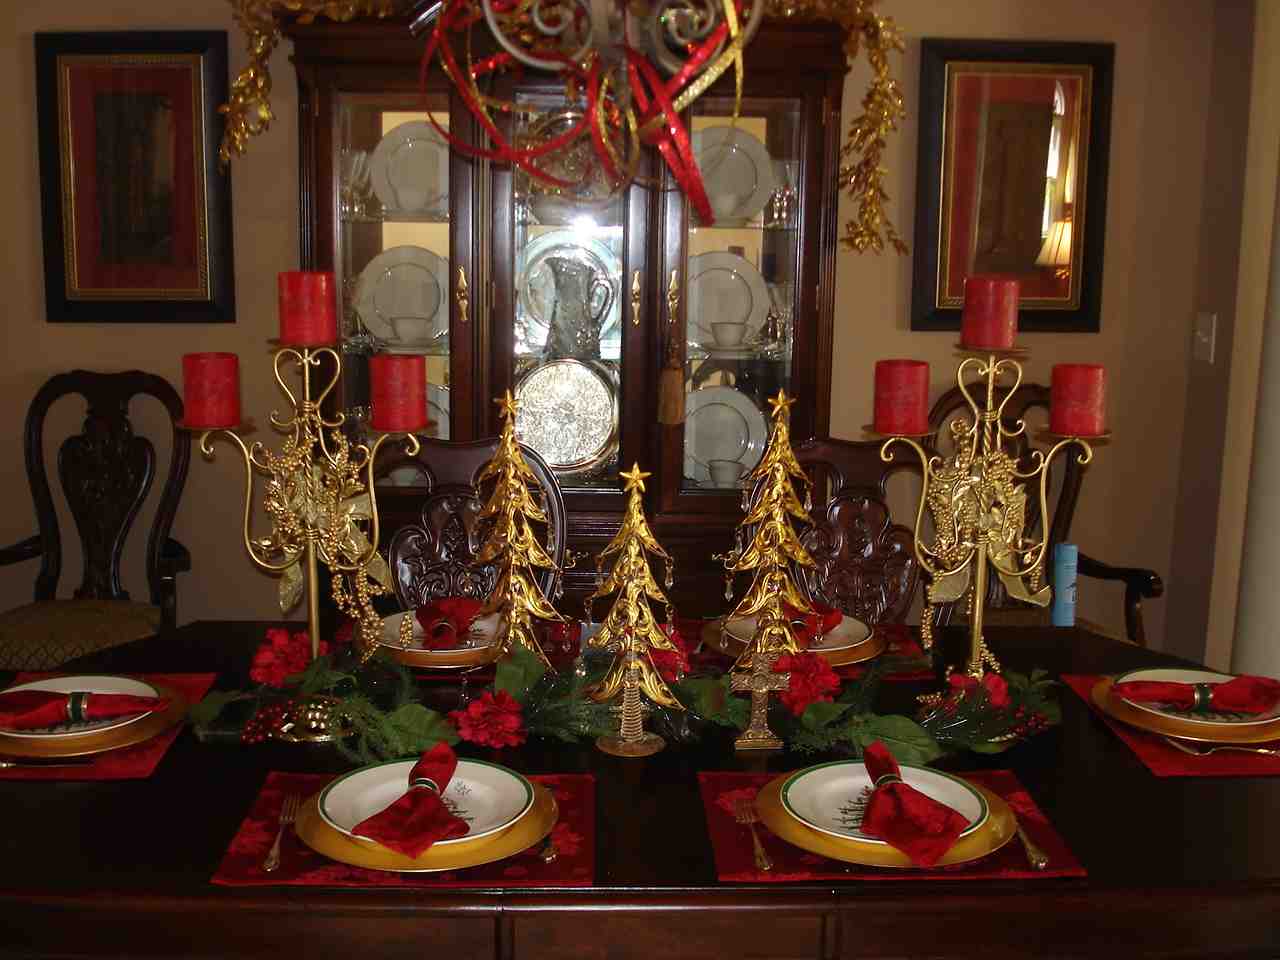 Christmas Dining Room Table Decoration Ideas - Decor Ideas